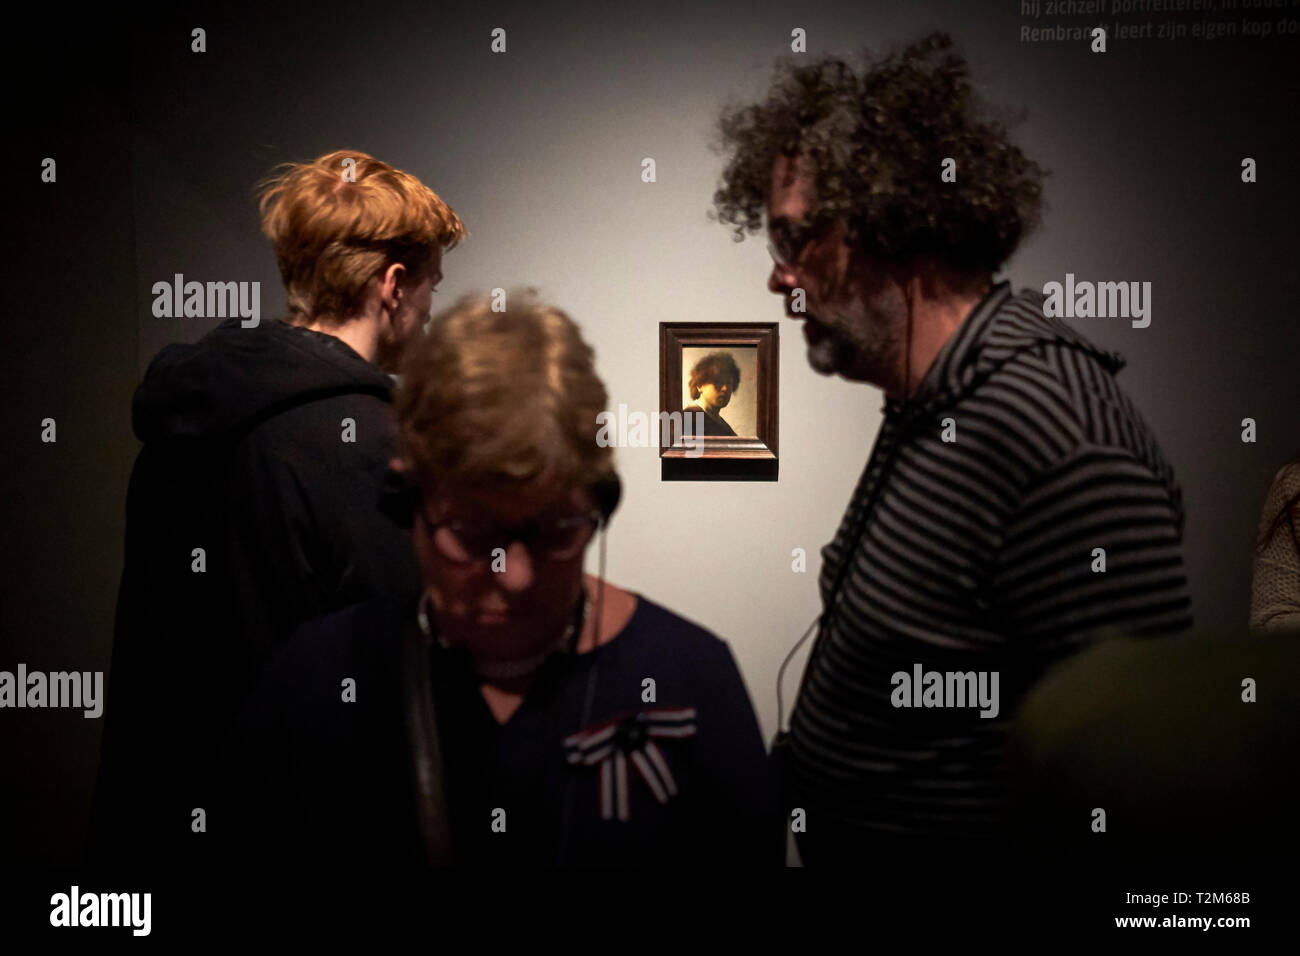 Los visitantes al Rijksmuseum observar uno de Rembrandt's más famosos autorretratos. El año 2019 marca el 350 aniversario de la muerte de Rembrandt. Foto de stock